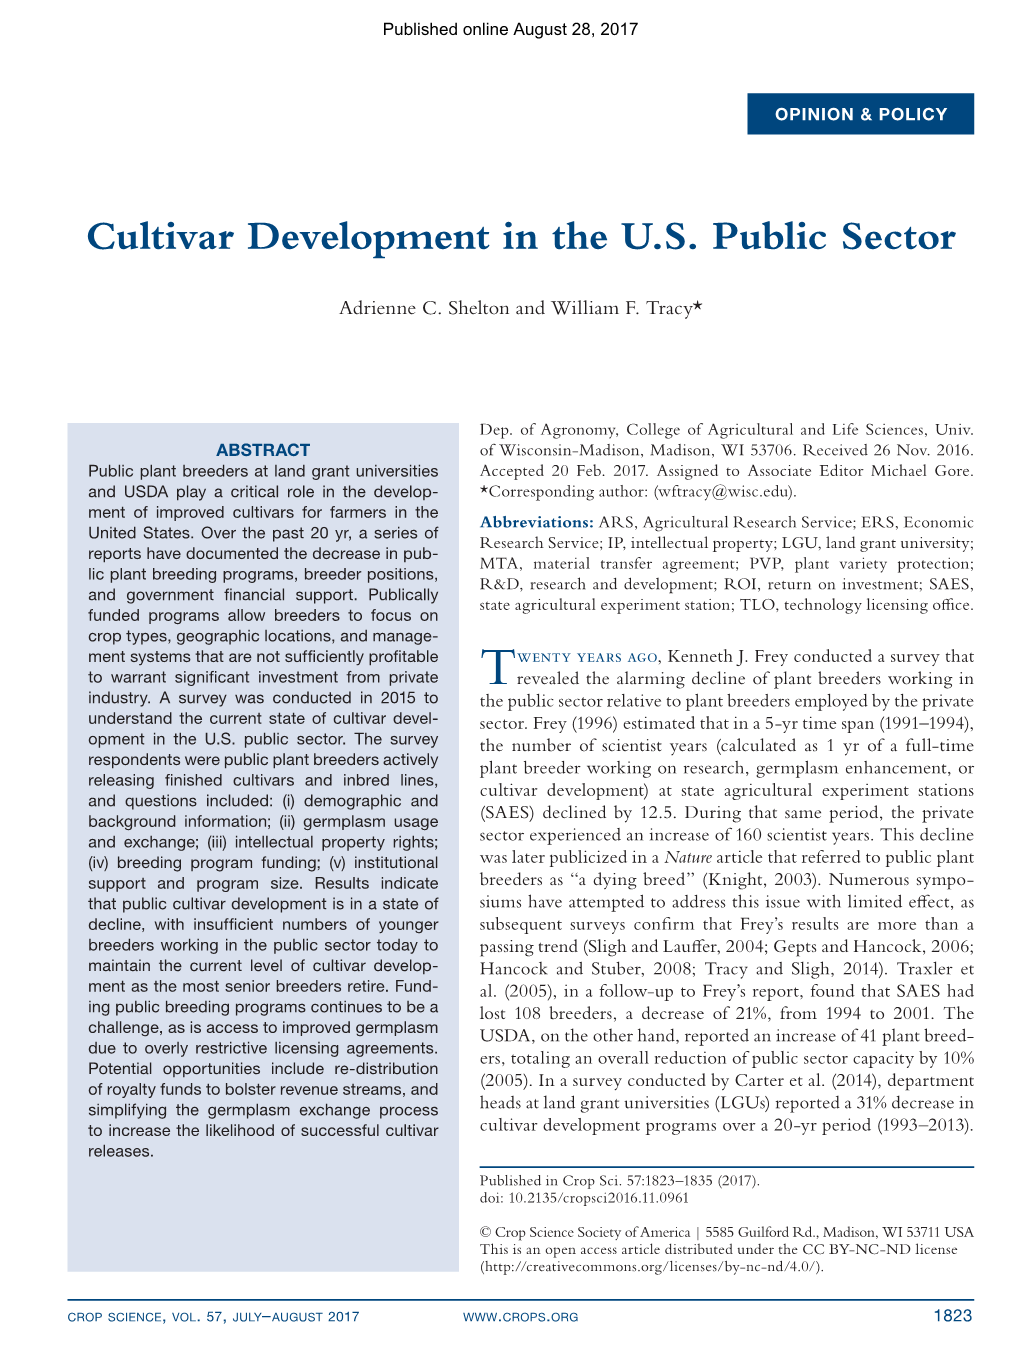 Cultivar Development in the U.S. Public Sector